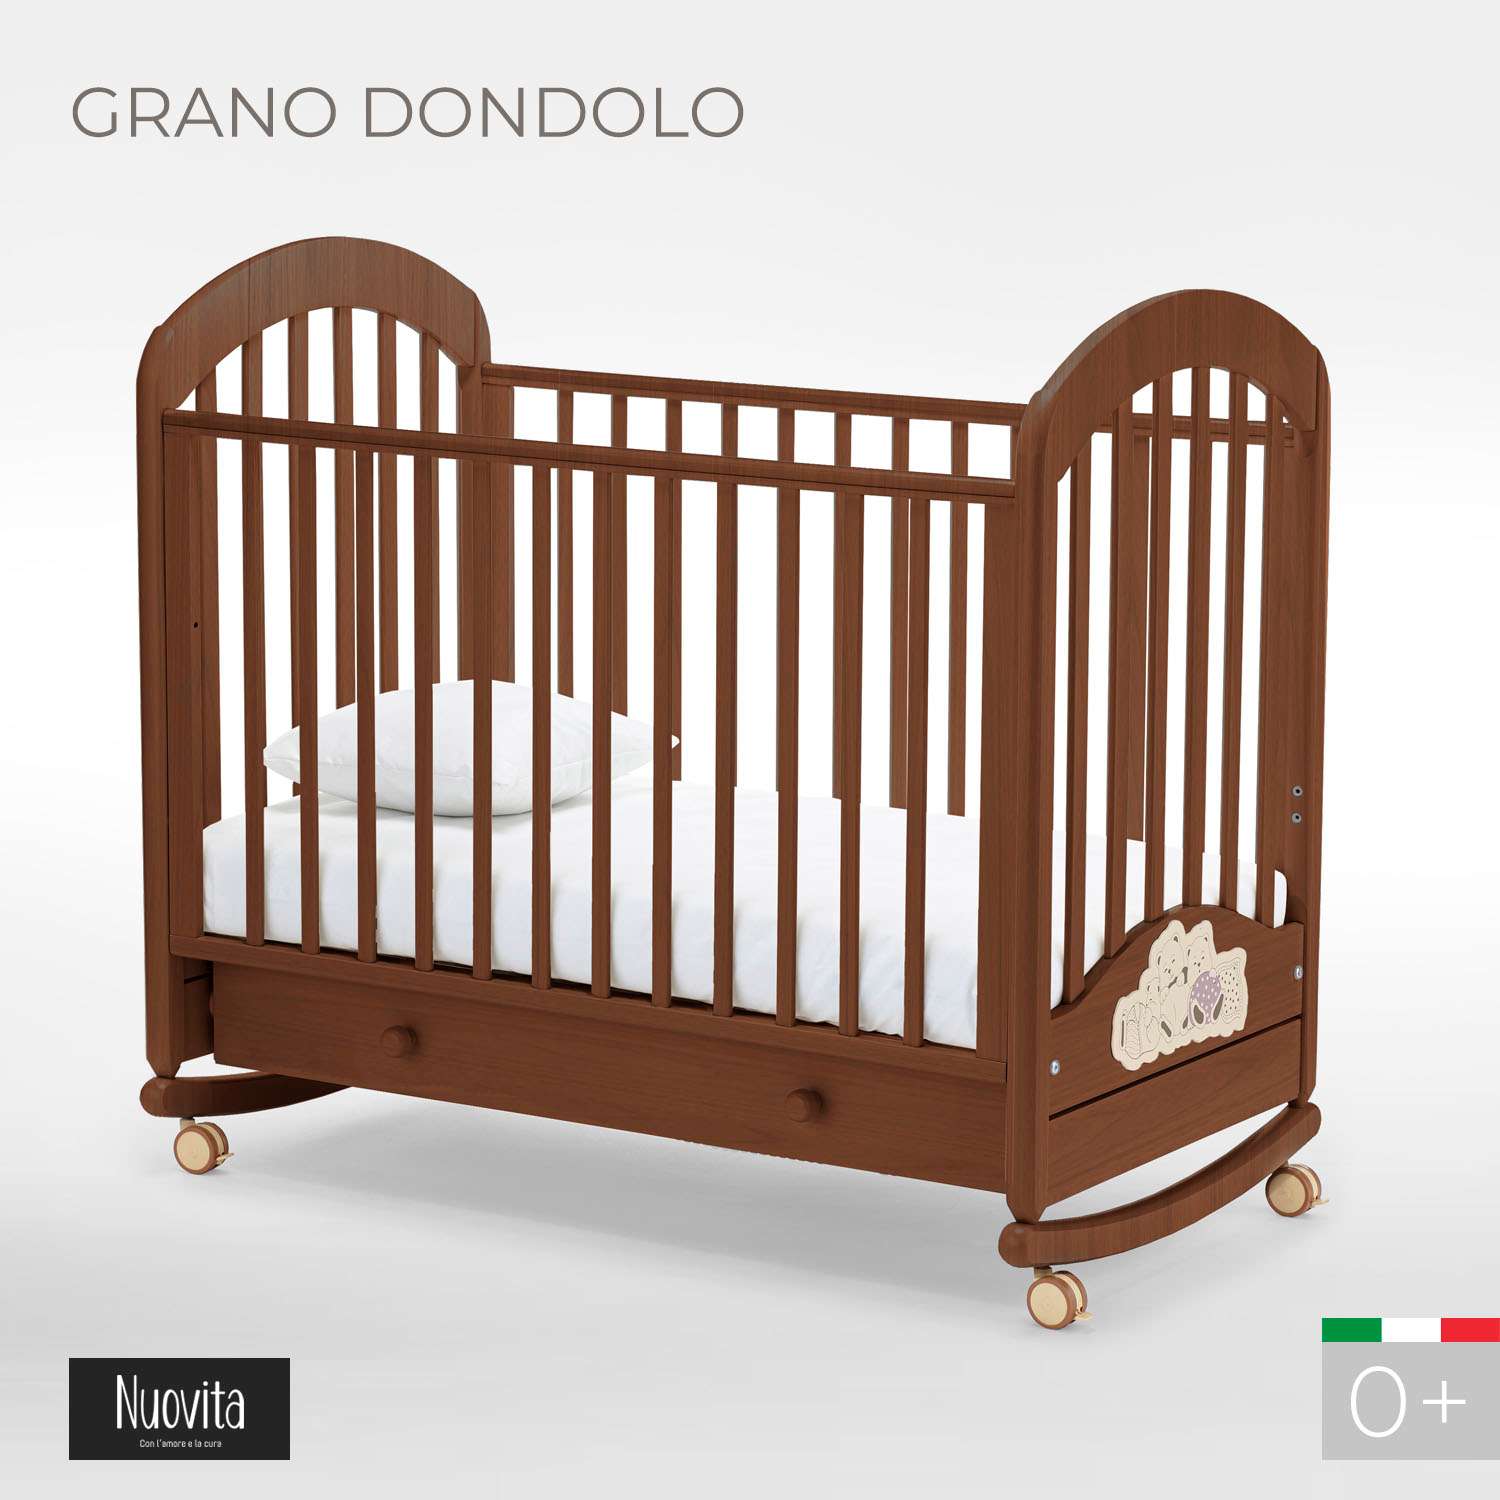 Детская кроватка Nuovita Grano Dondolo прямоугольная, без маятника (темный орех) - фото 2